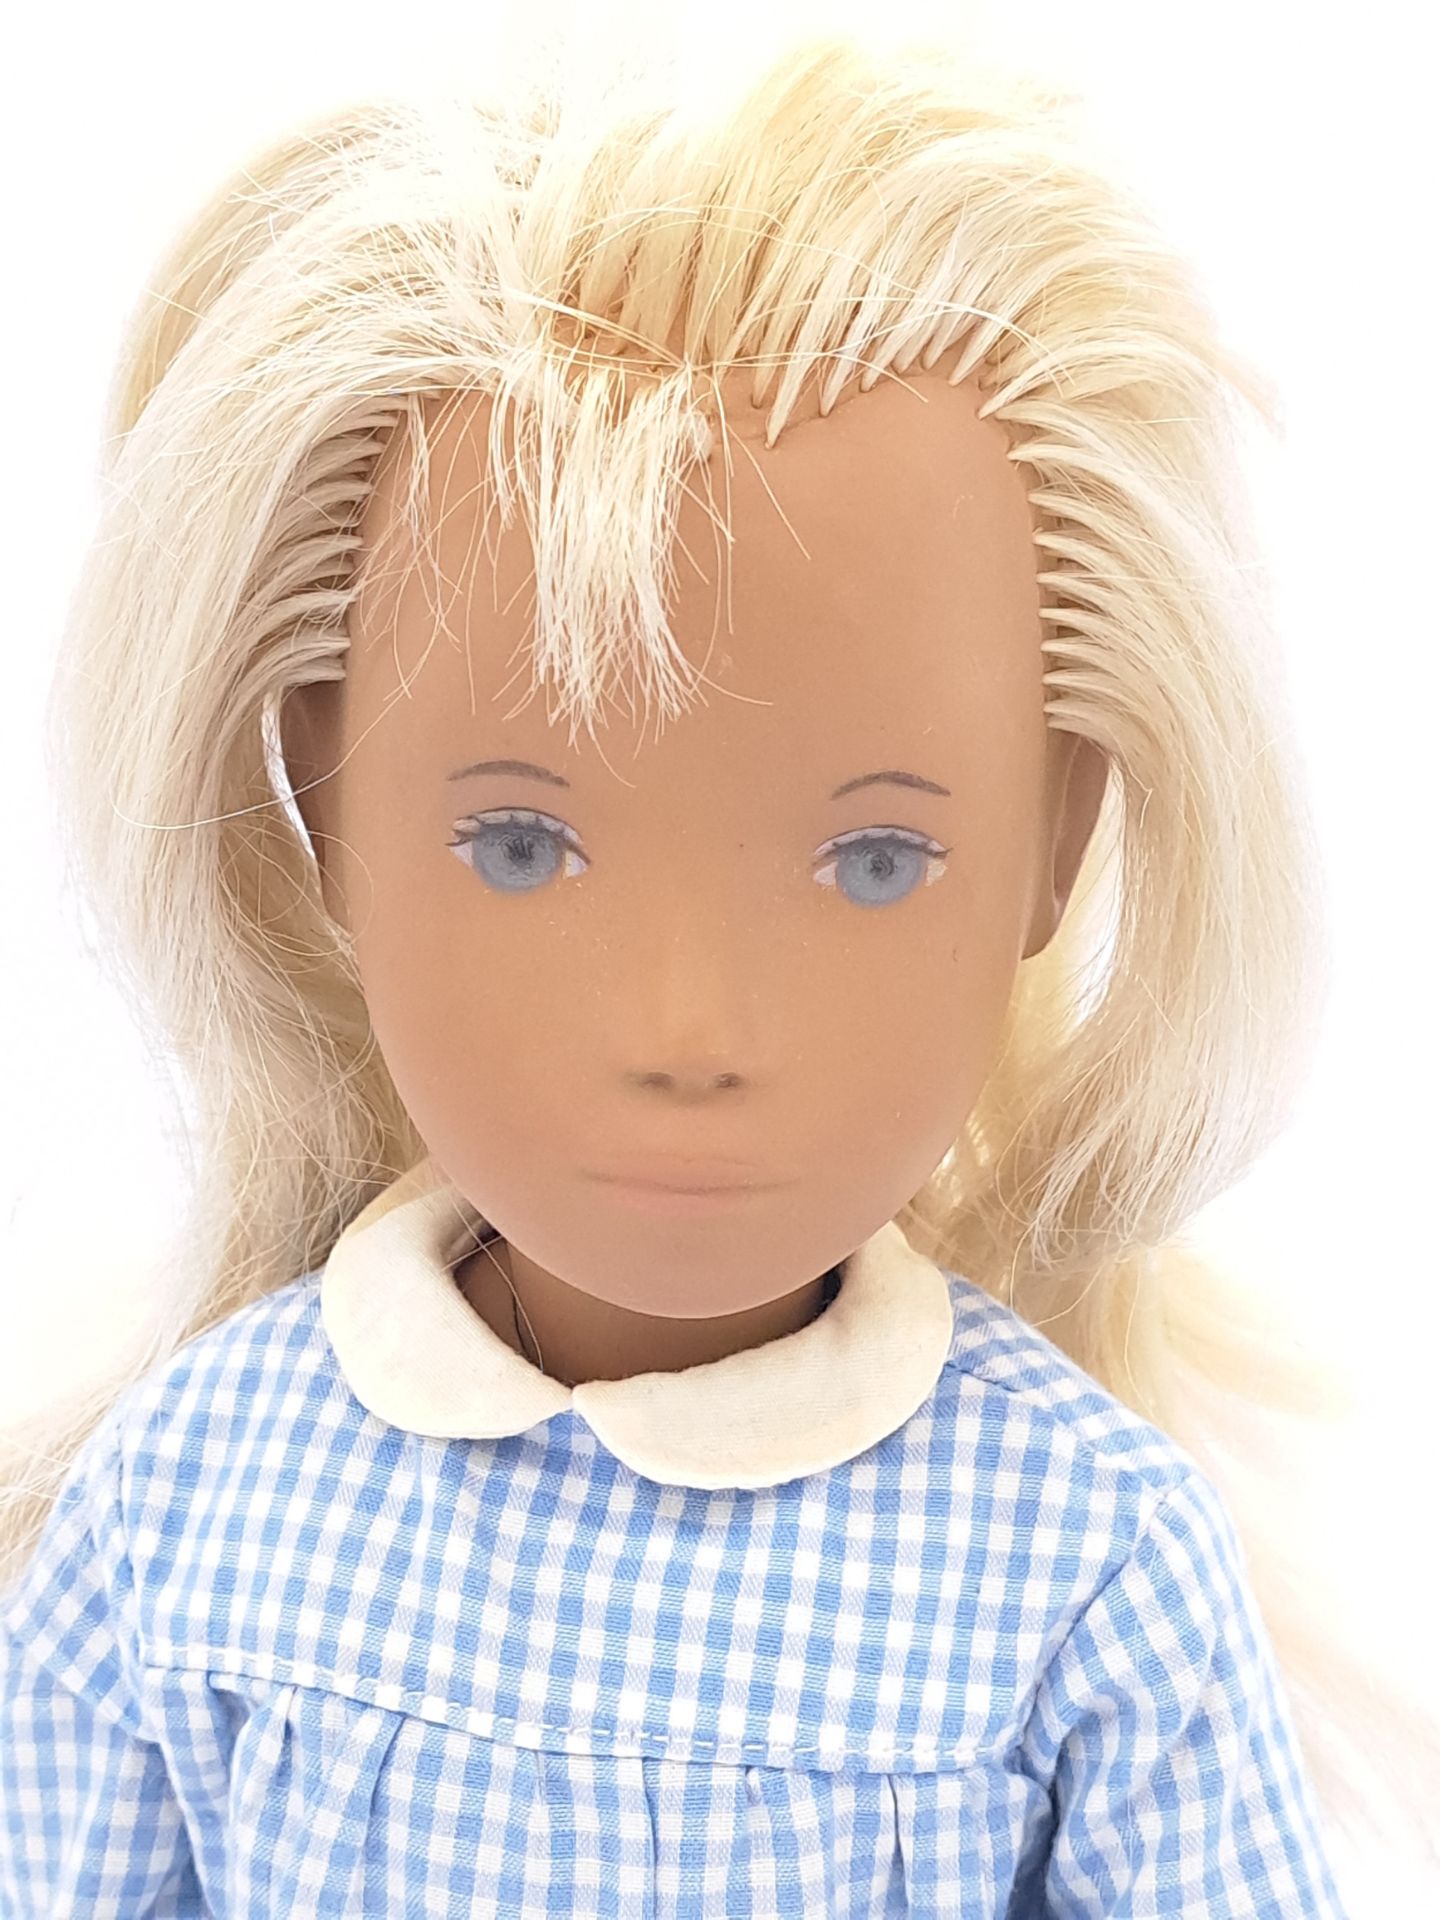 Sasha blonde gingham doll - Image 3 of 3